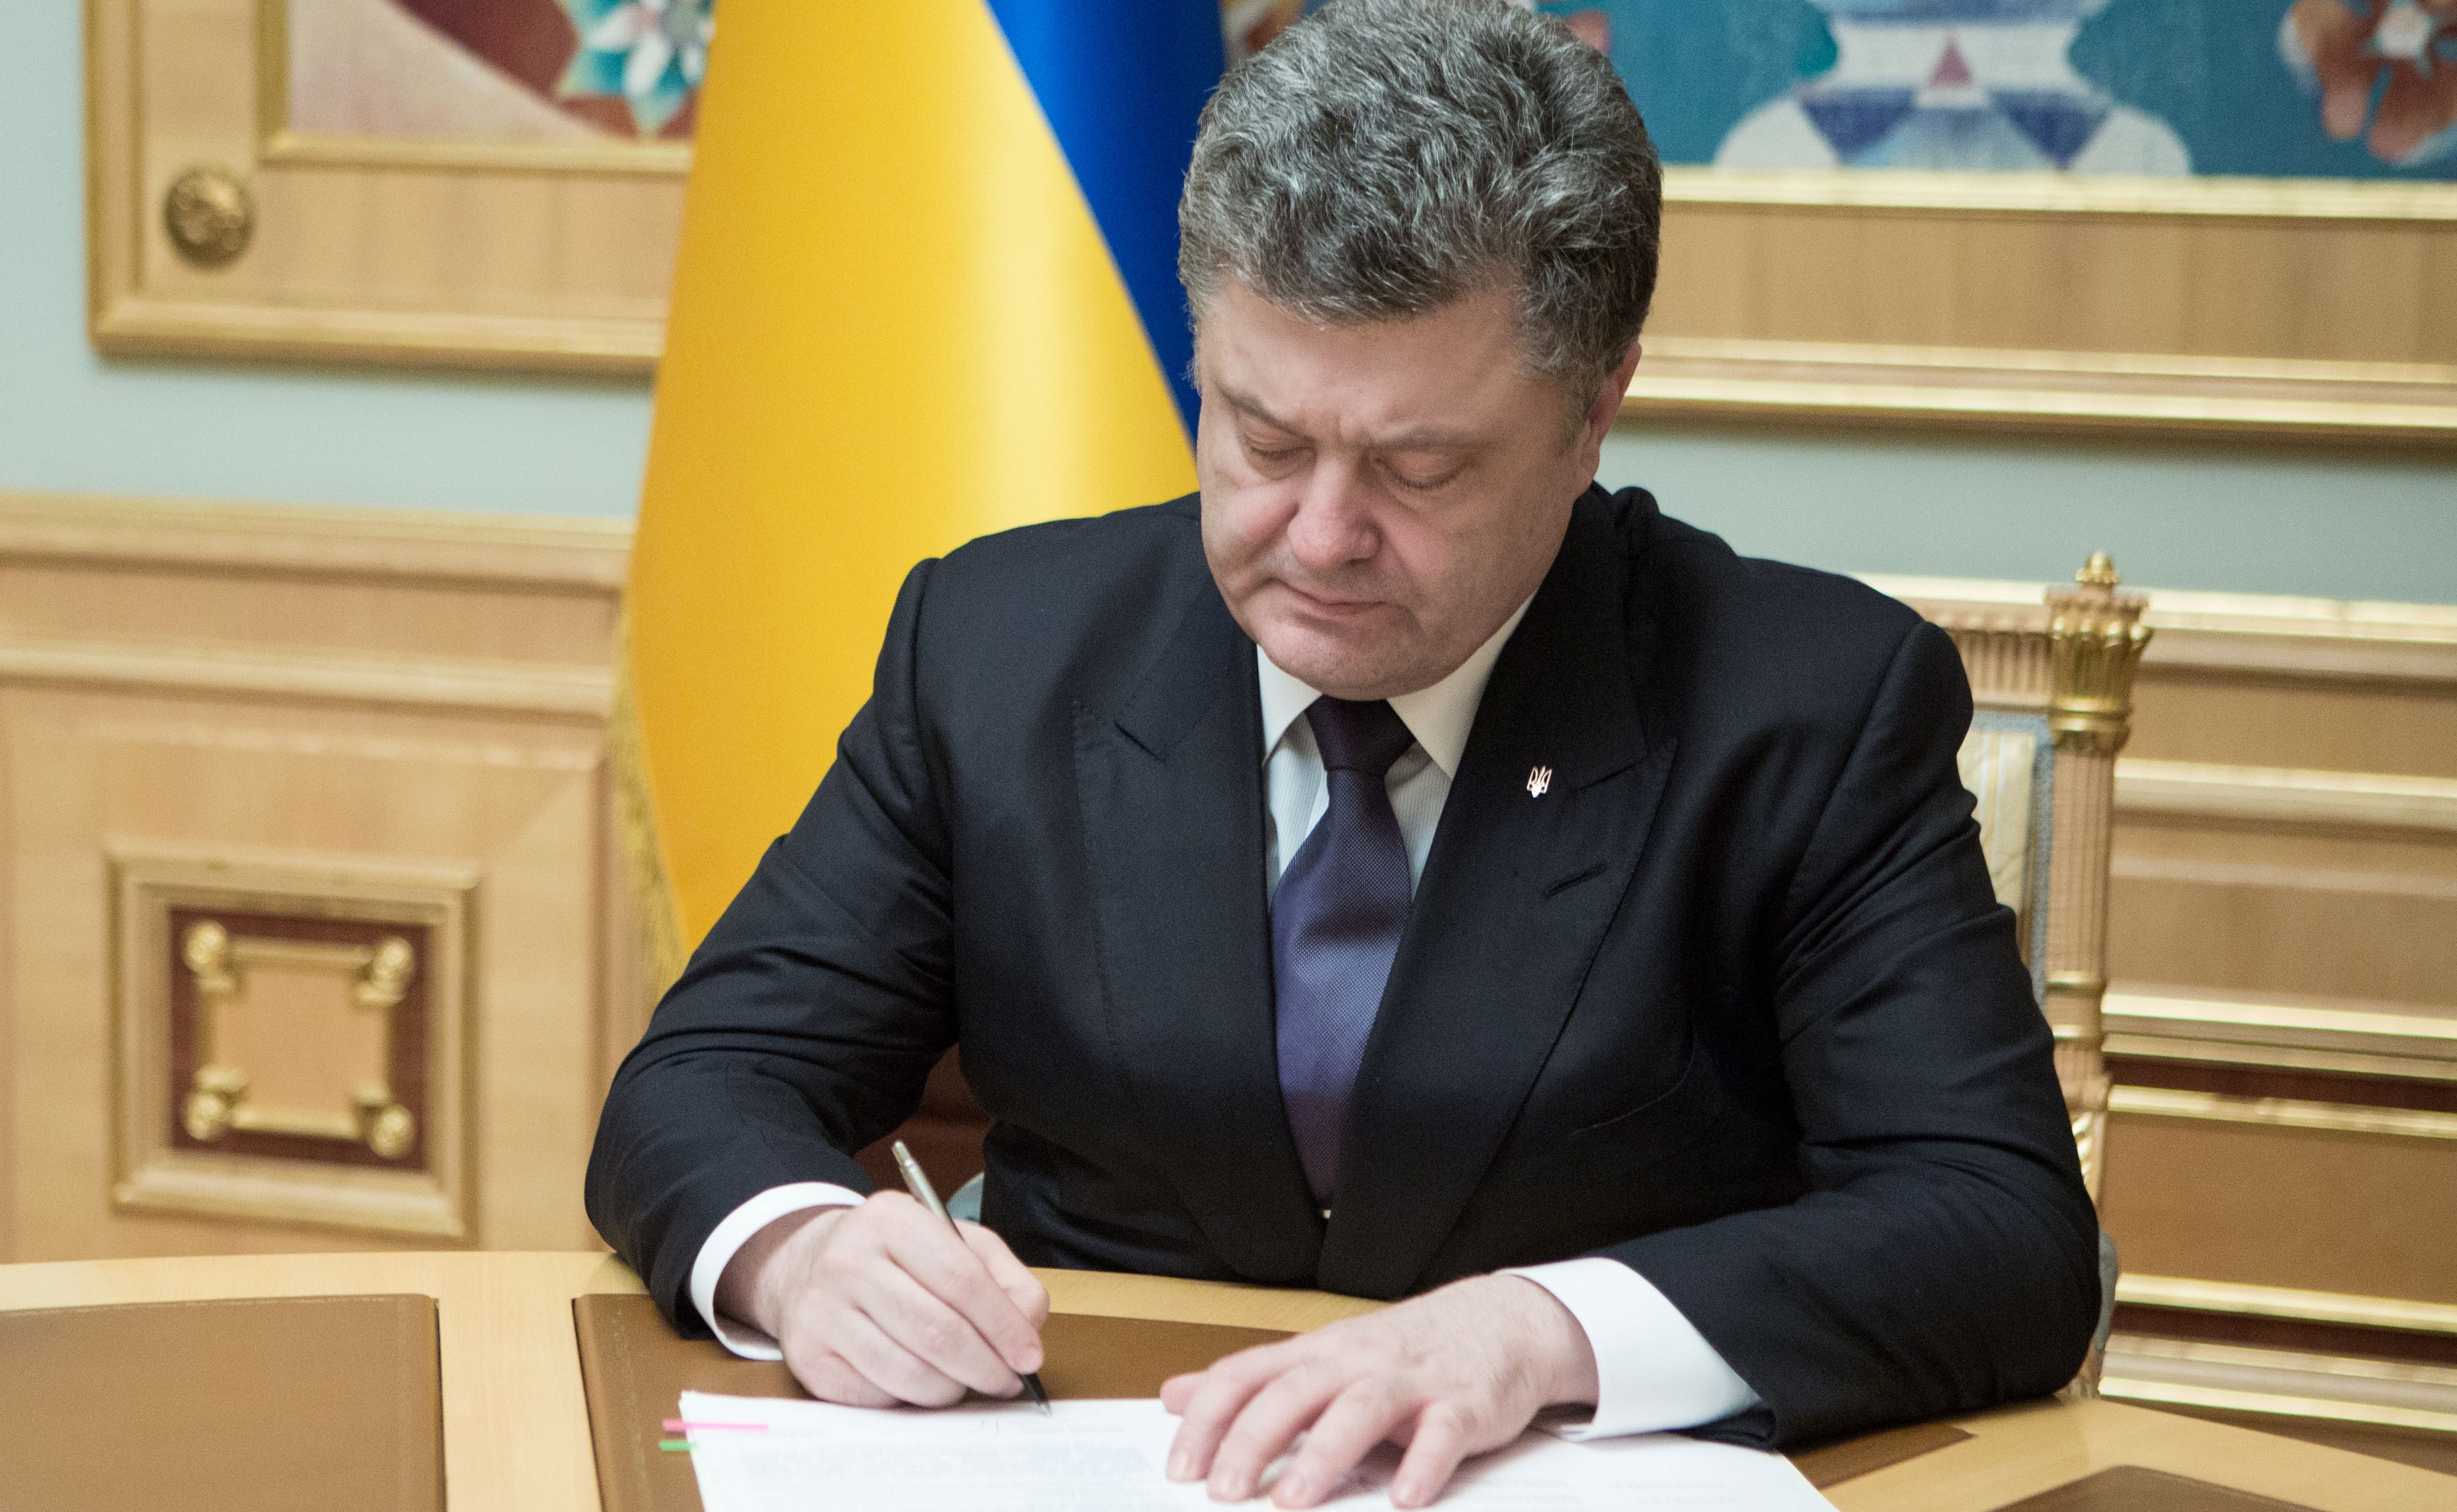 Ввести военное положение в Украине - прямая обязанность президента: Бессмертный рассказал, когда у Порошенко не останется выбора